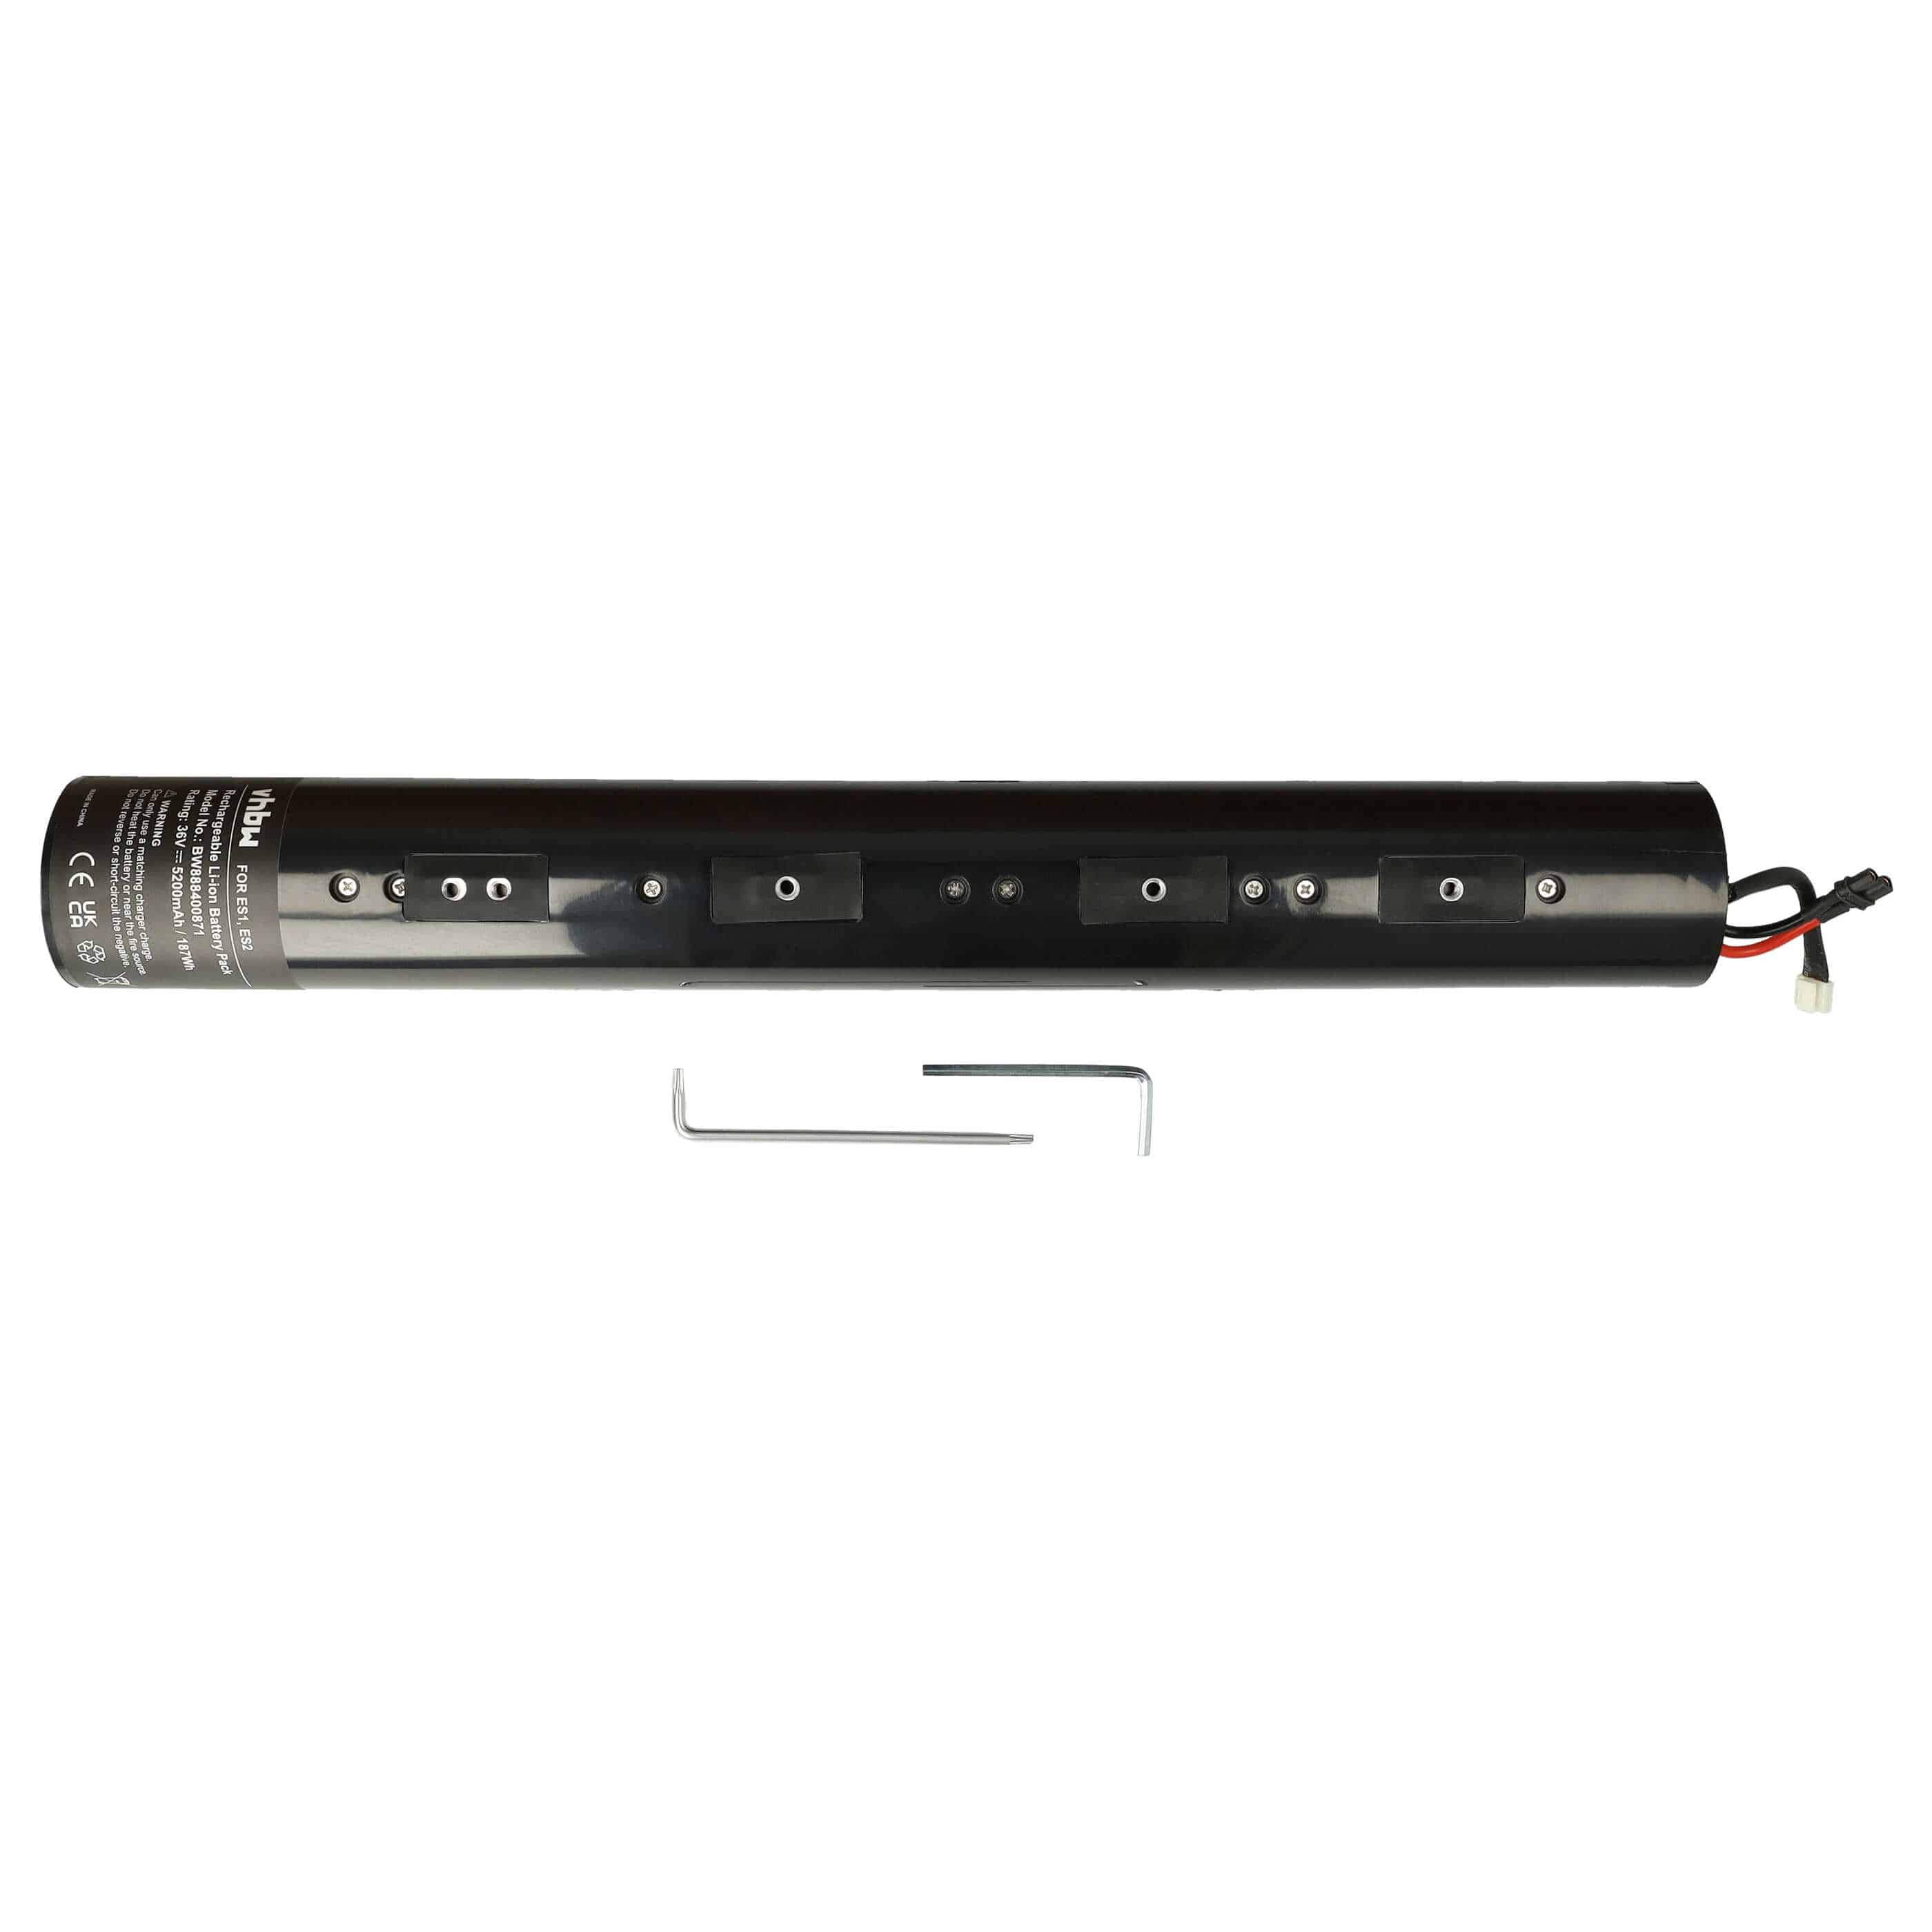 Electric Scooter Battery Replacement for Segway Ninebot NEB1002-H1, NEB1002-U1, NEB1002-H - 5200mAh 36V Li-Ion